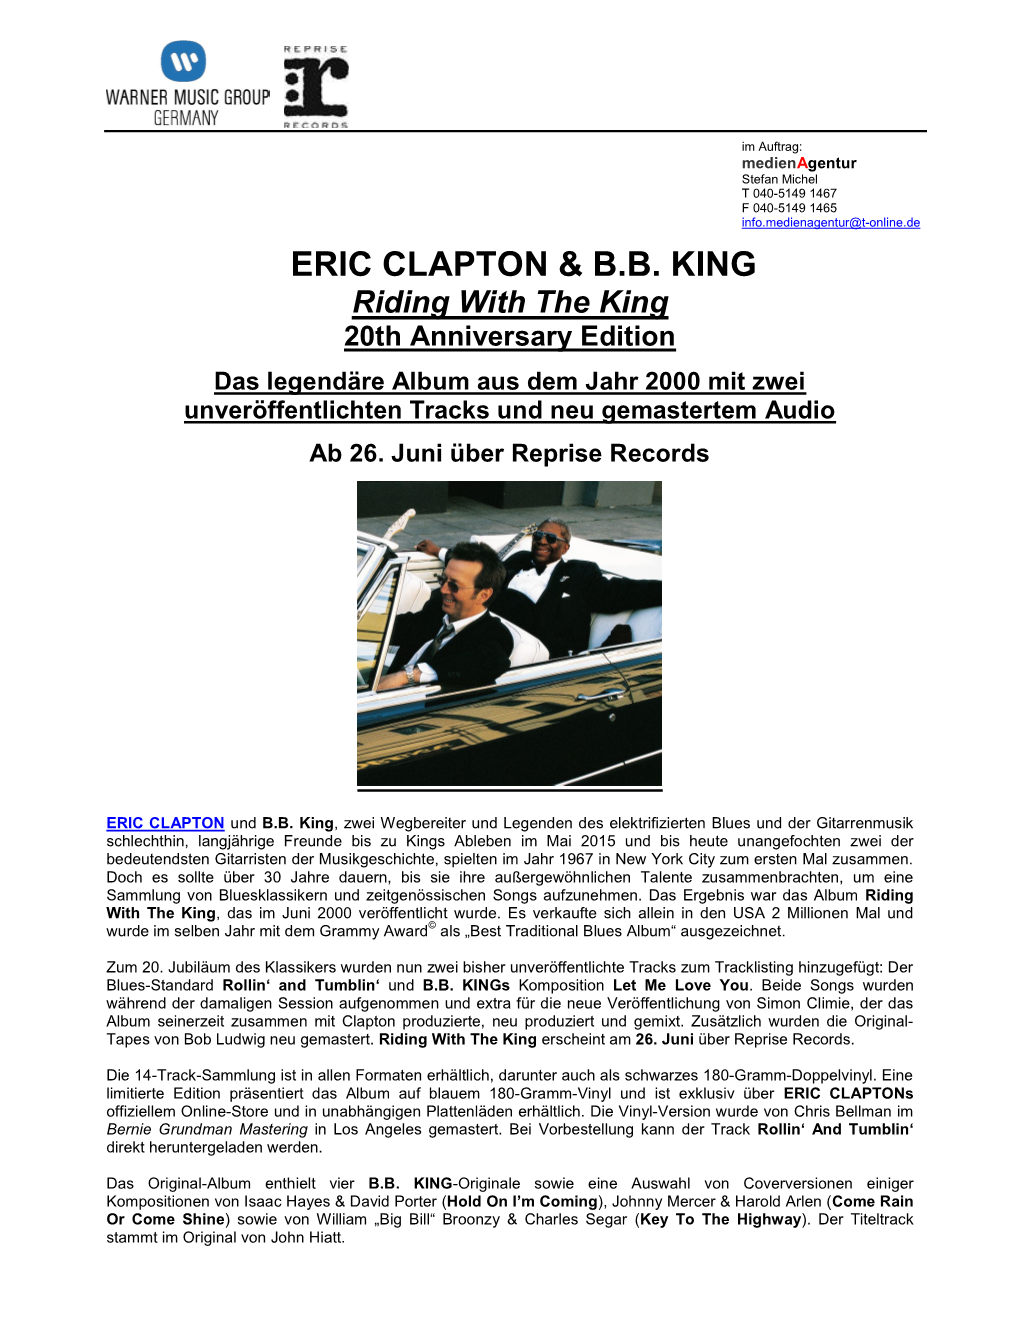 Eric Clapton & B.B. King